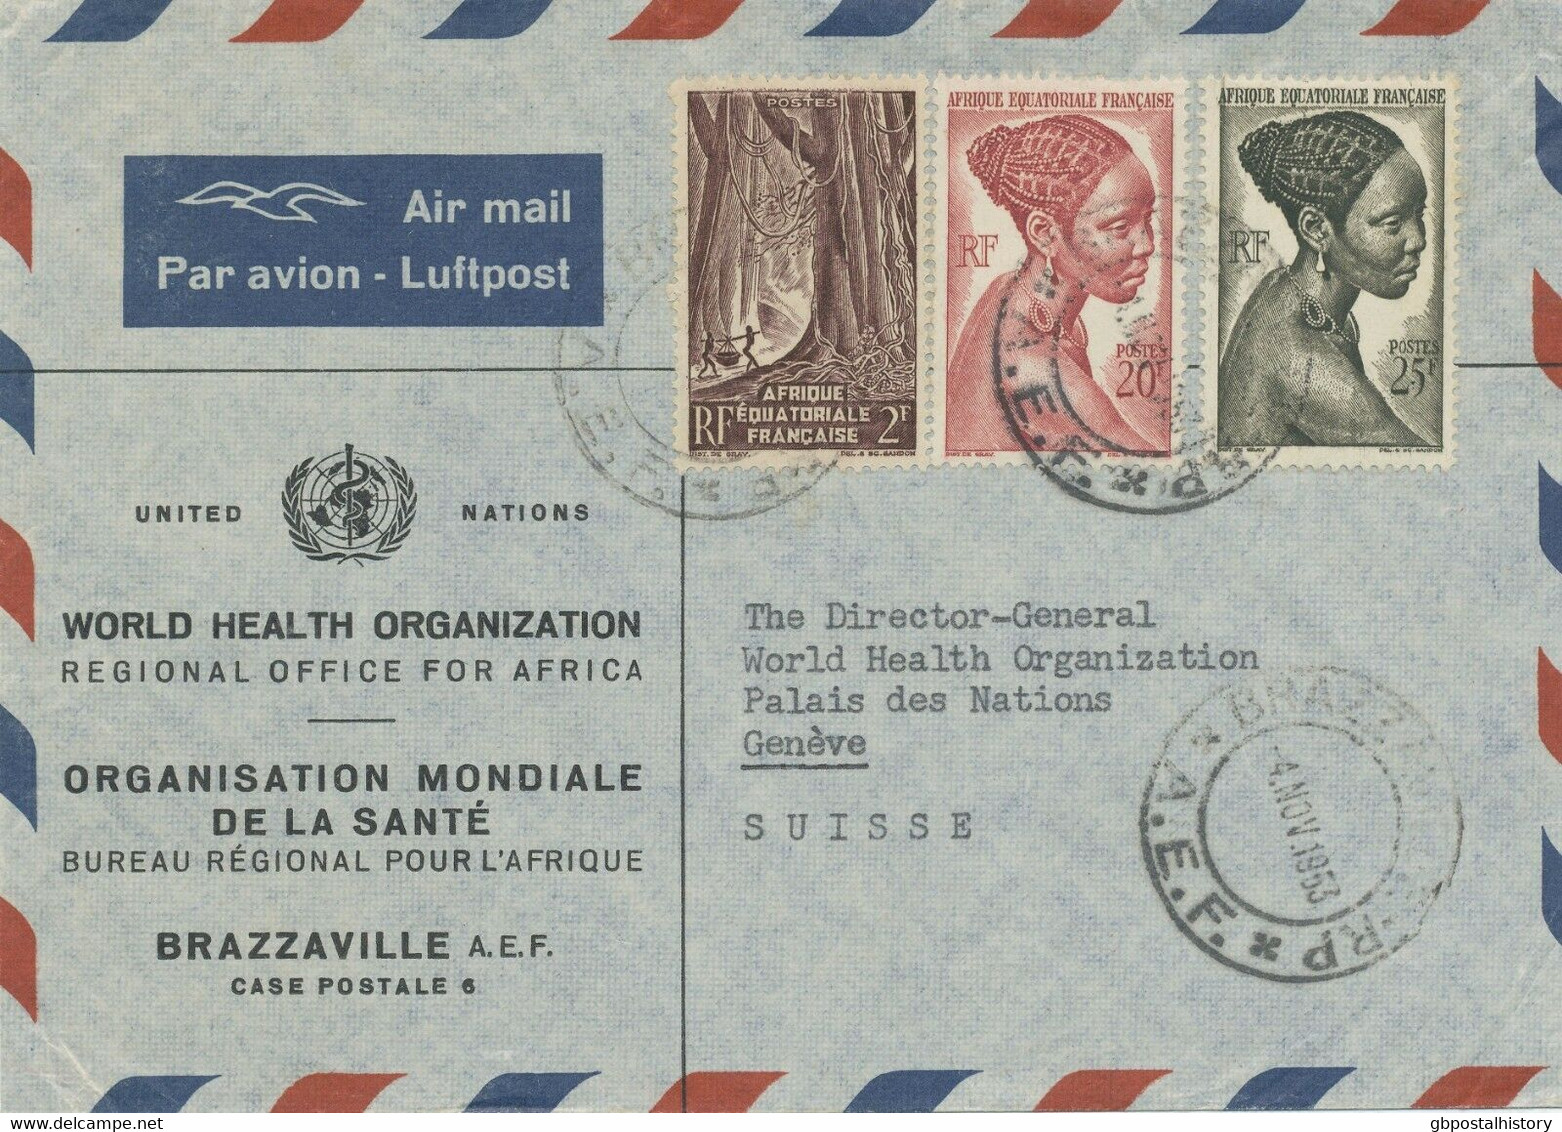 FRANZÖSISCH ÄQUATORIAL AFRIKA 1953 Buntfrankatur Kab.-Vordruck-Lupo Der WHO UNO - Covers & Documents